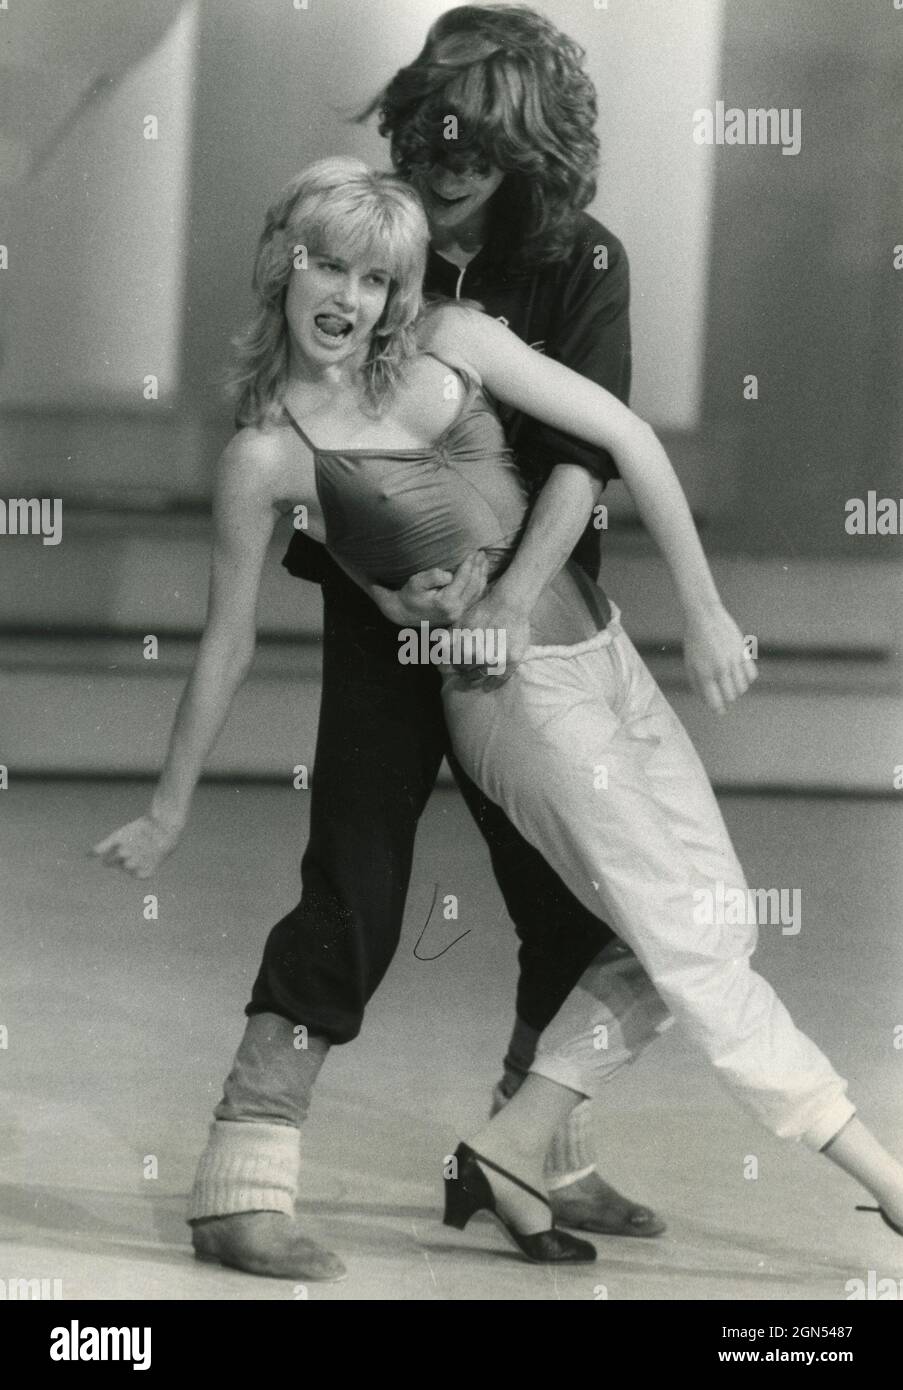 La showgirl y bailarina italiana Lorella Cuccarini en el programa de televisión Fantastico 6, 1980s Foto de stock